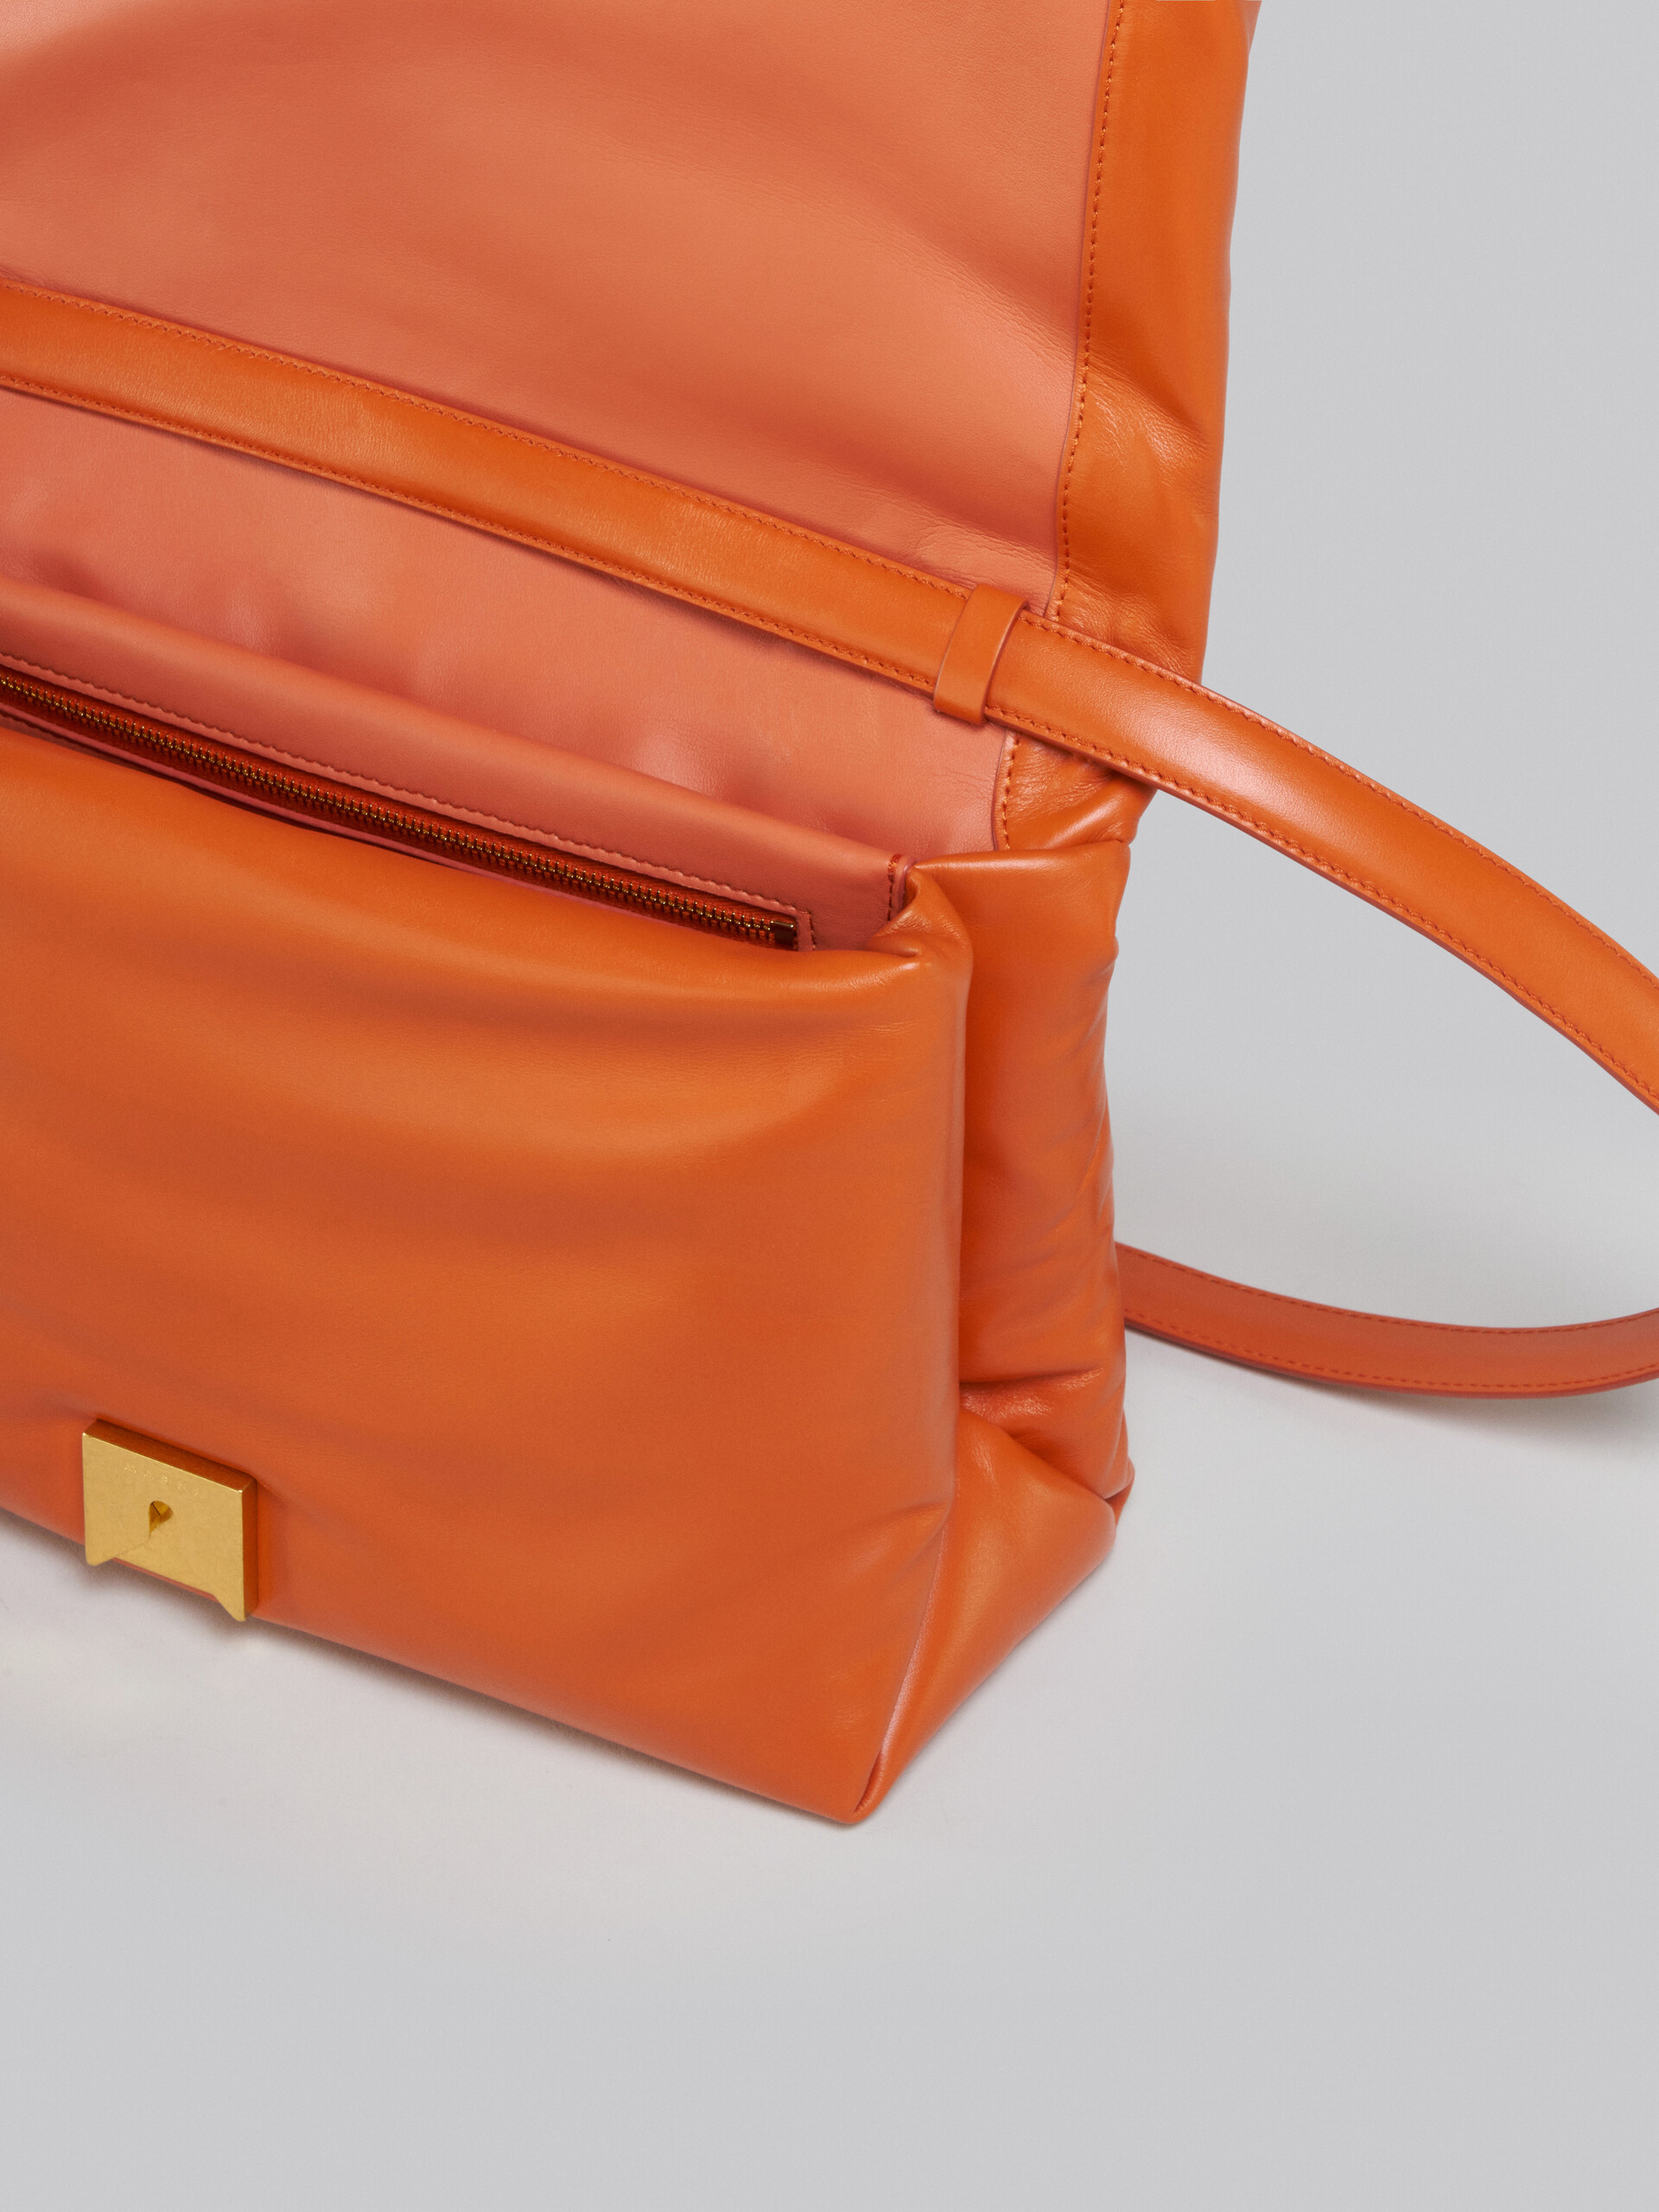 Large orange calsfkin Prisma bag - Shoulder Bag - Image 4